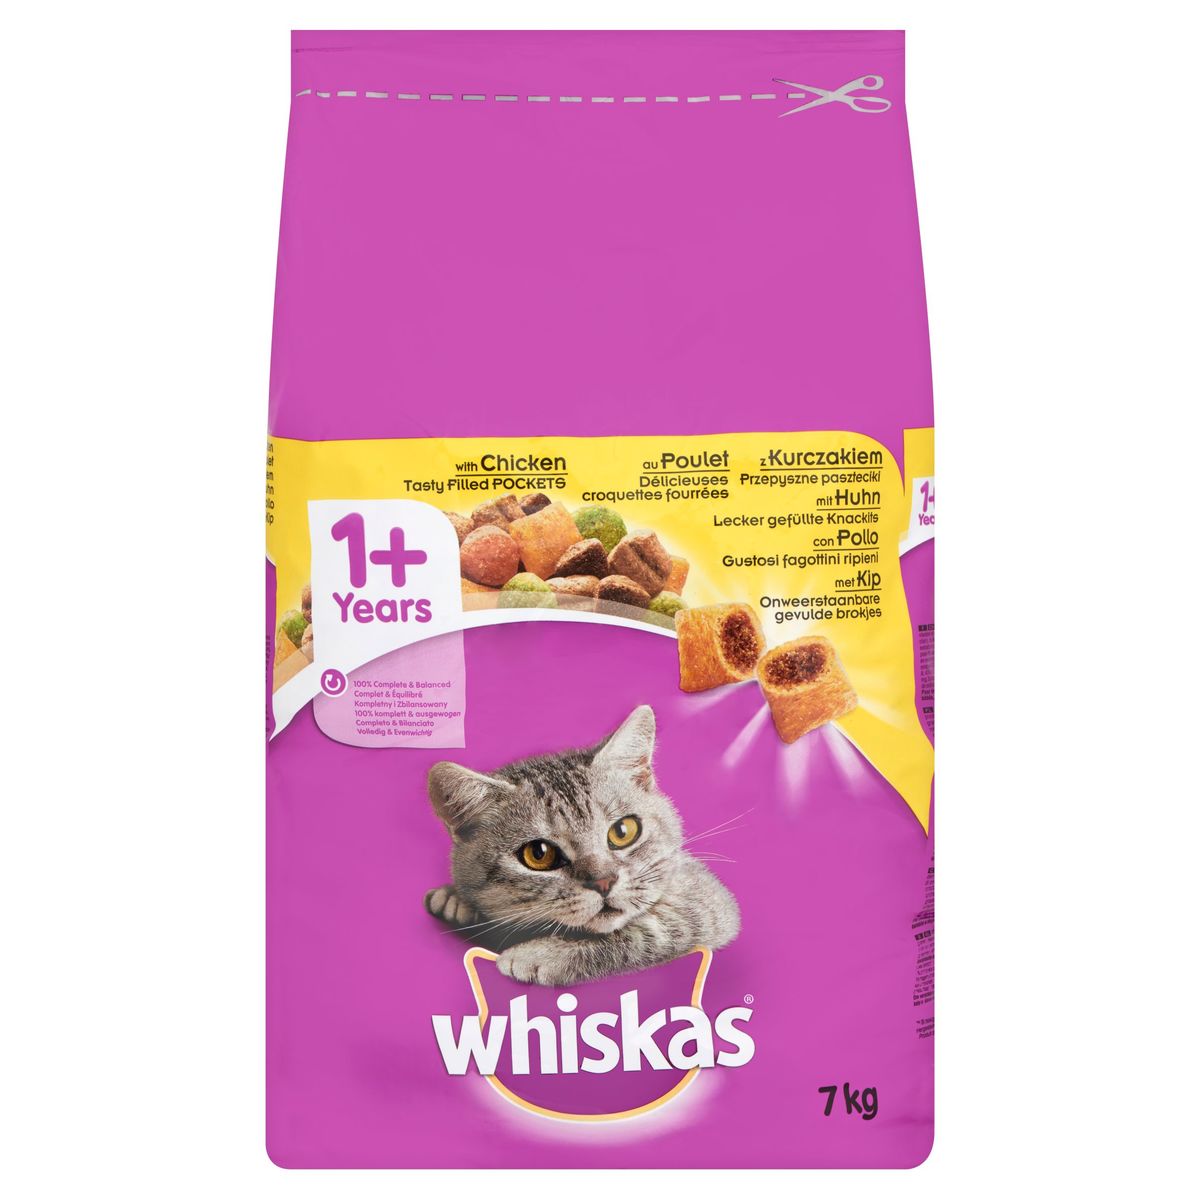 Whiskas 1+ Jaar Onweerstaanbare Gevulde Brokjes met Kip 7 kg